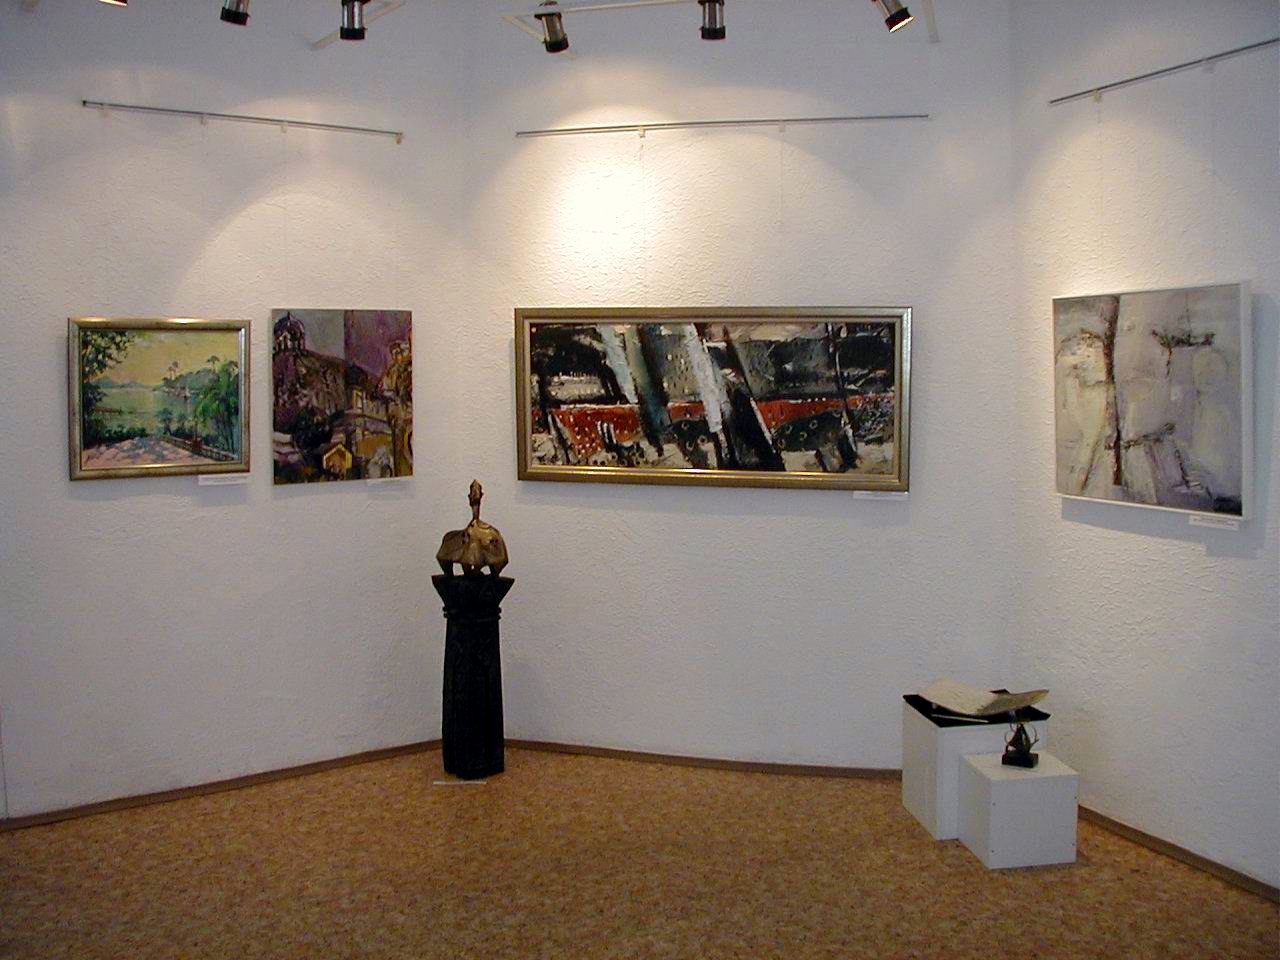 City Art Gallery - Temporary Exhibition Halls